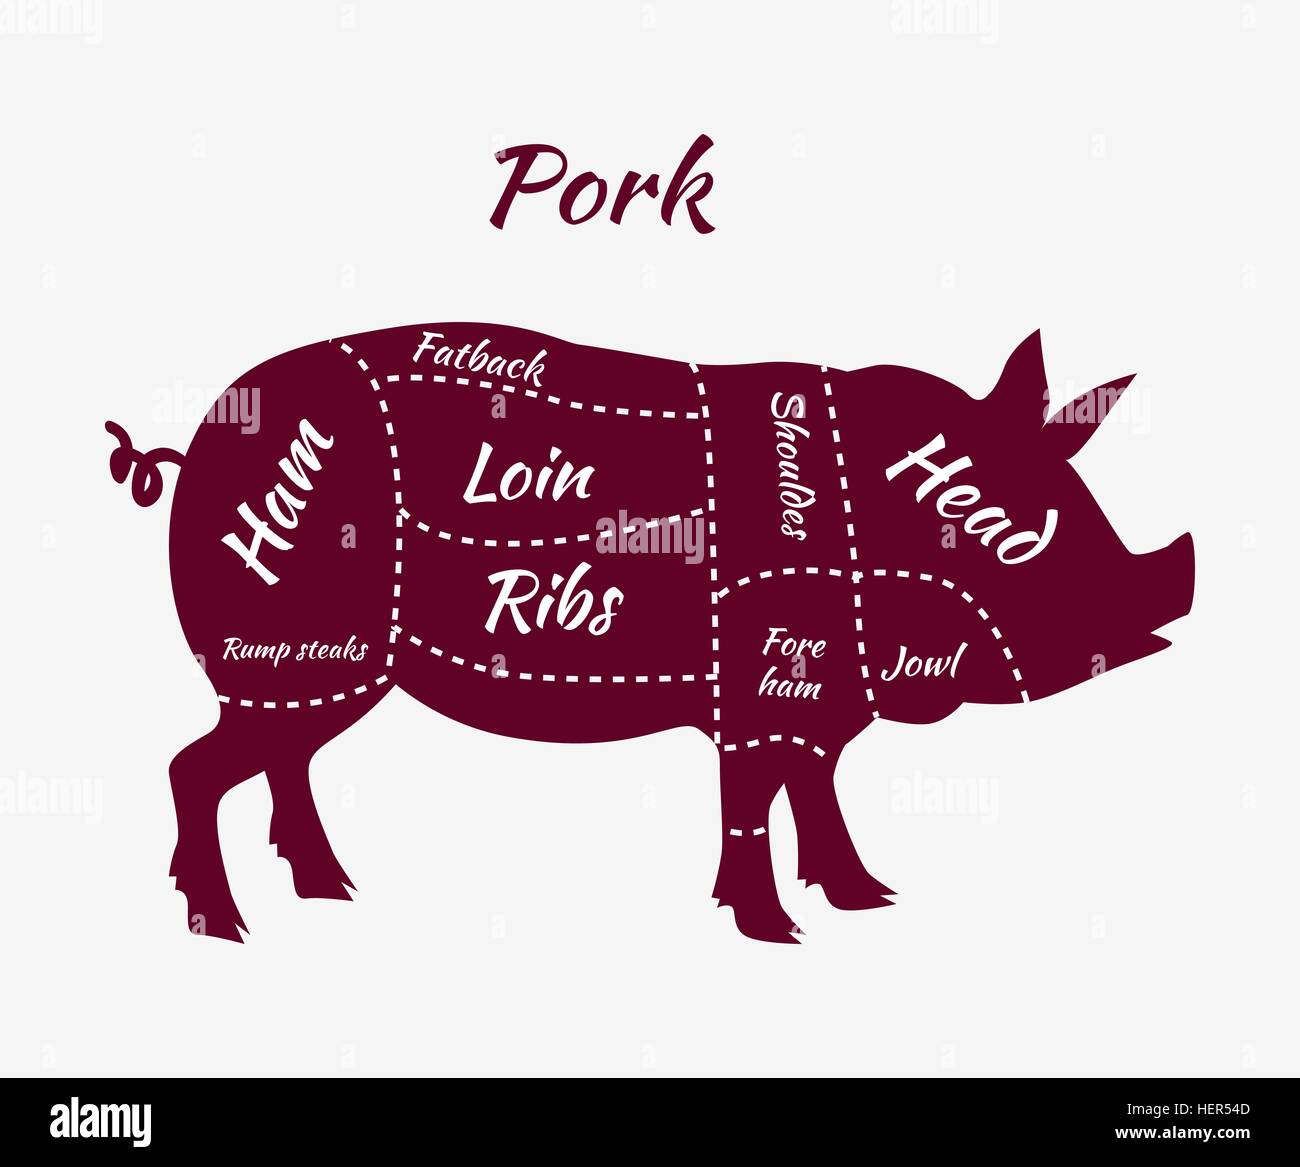 Ci americano di tagli di carne di maiale. La carne di maiale o di tagli di suini. Ci americano di tagli di carne di maiale. I Tagli di carne di maiale barbecue illustrazione vettoriale. La carne di maiale tagli. Illustrazione Vettoriale